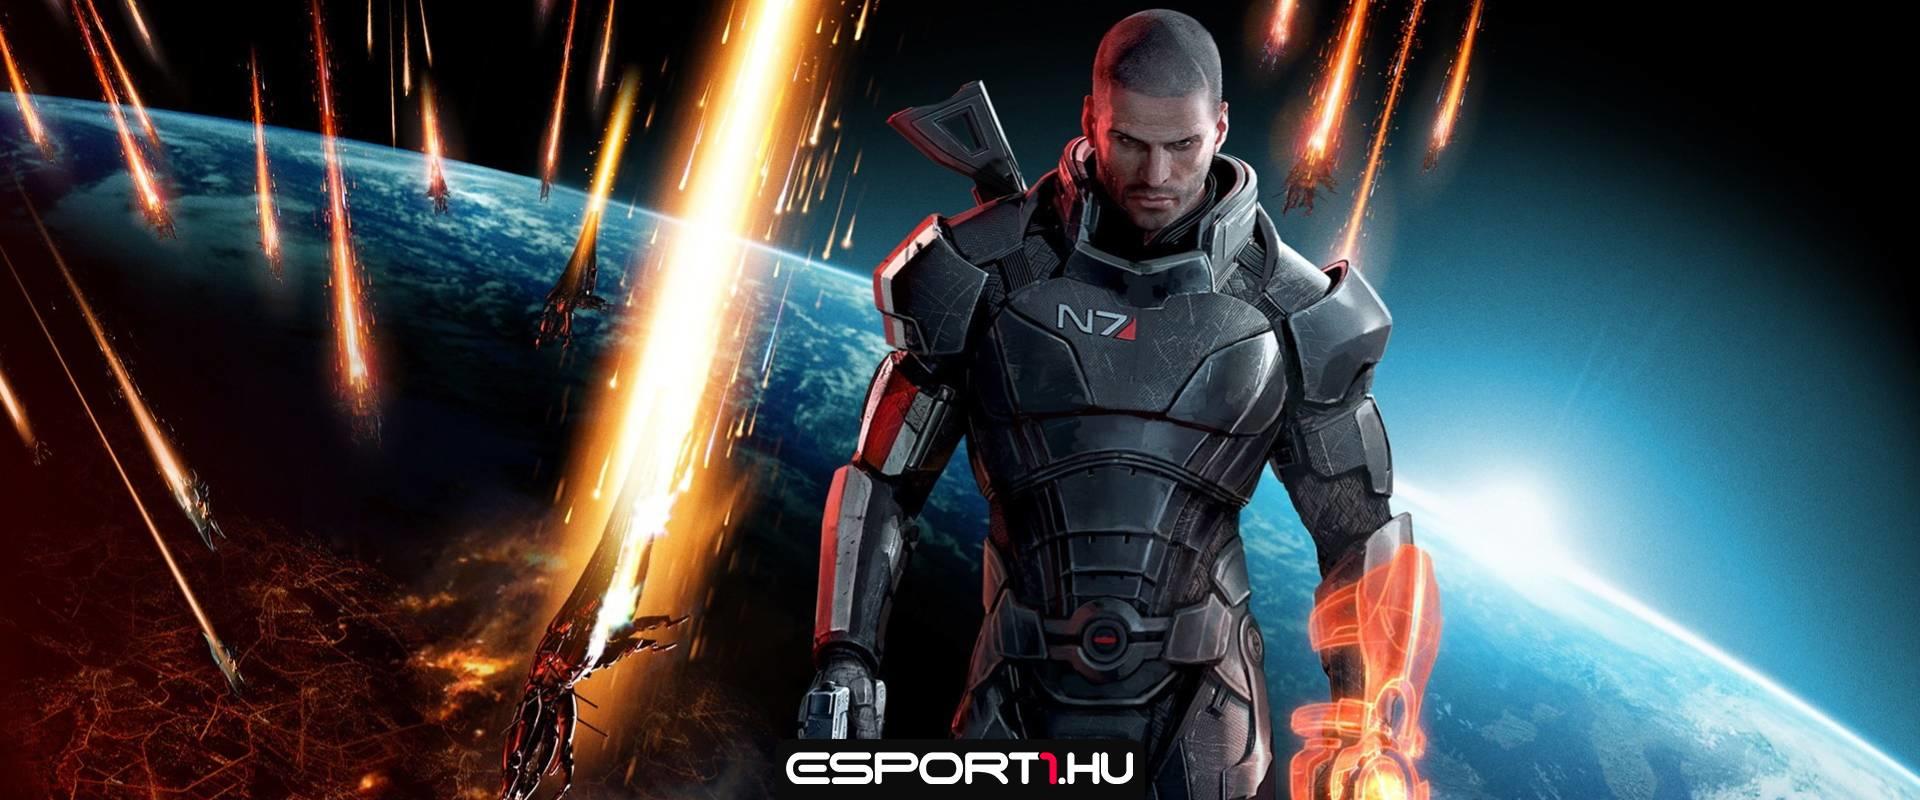 Jöhet a Mass Effect sorozat?